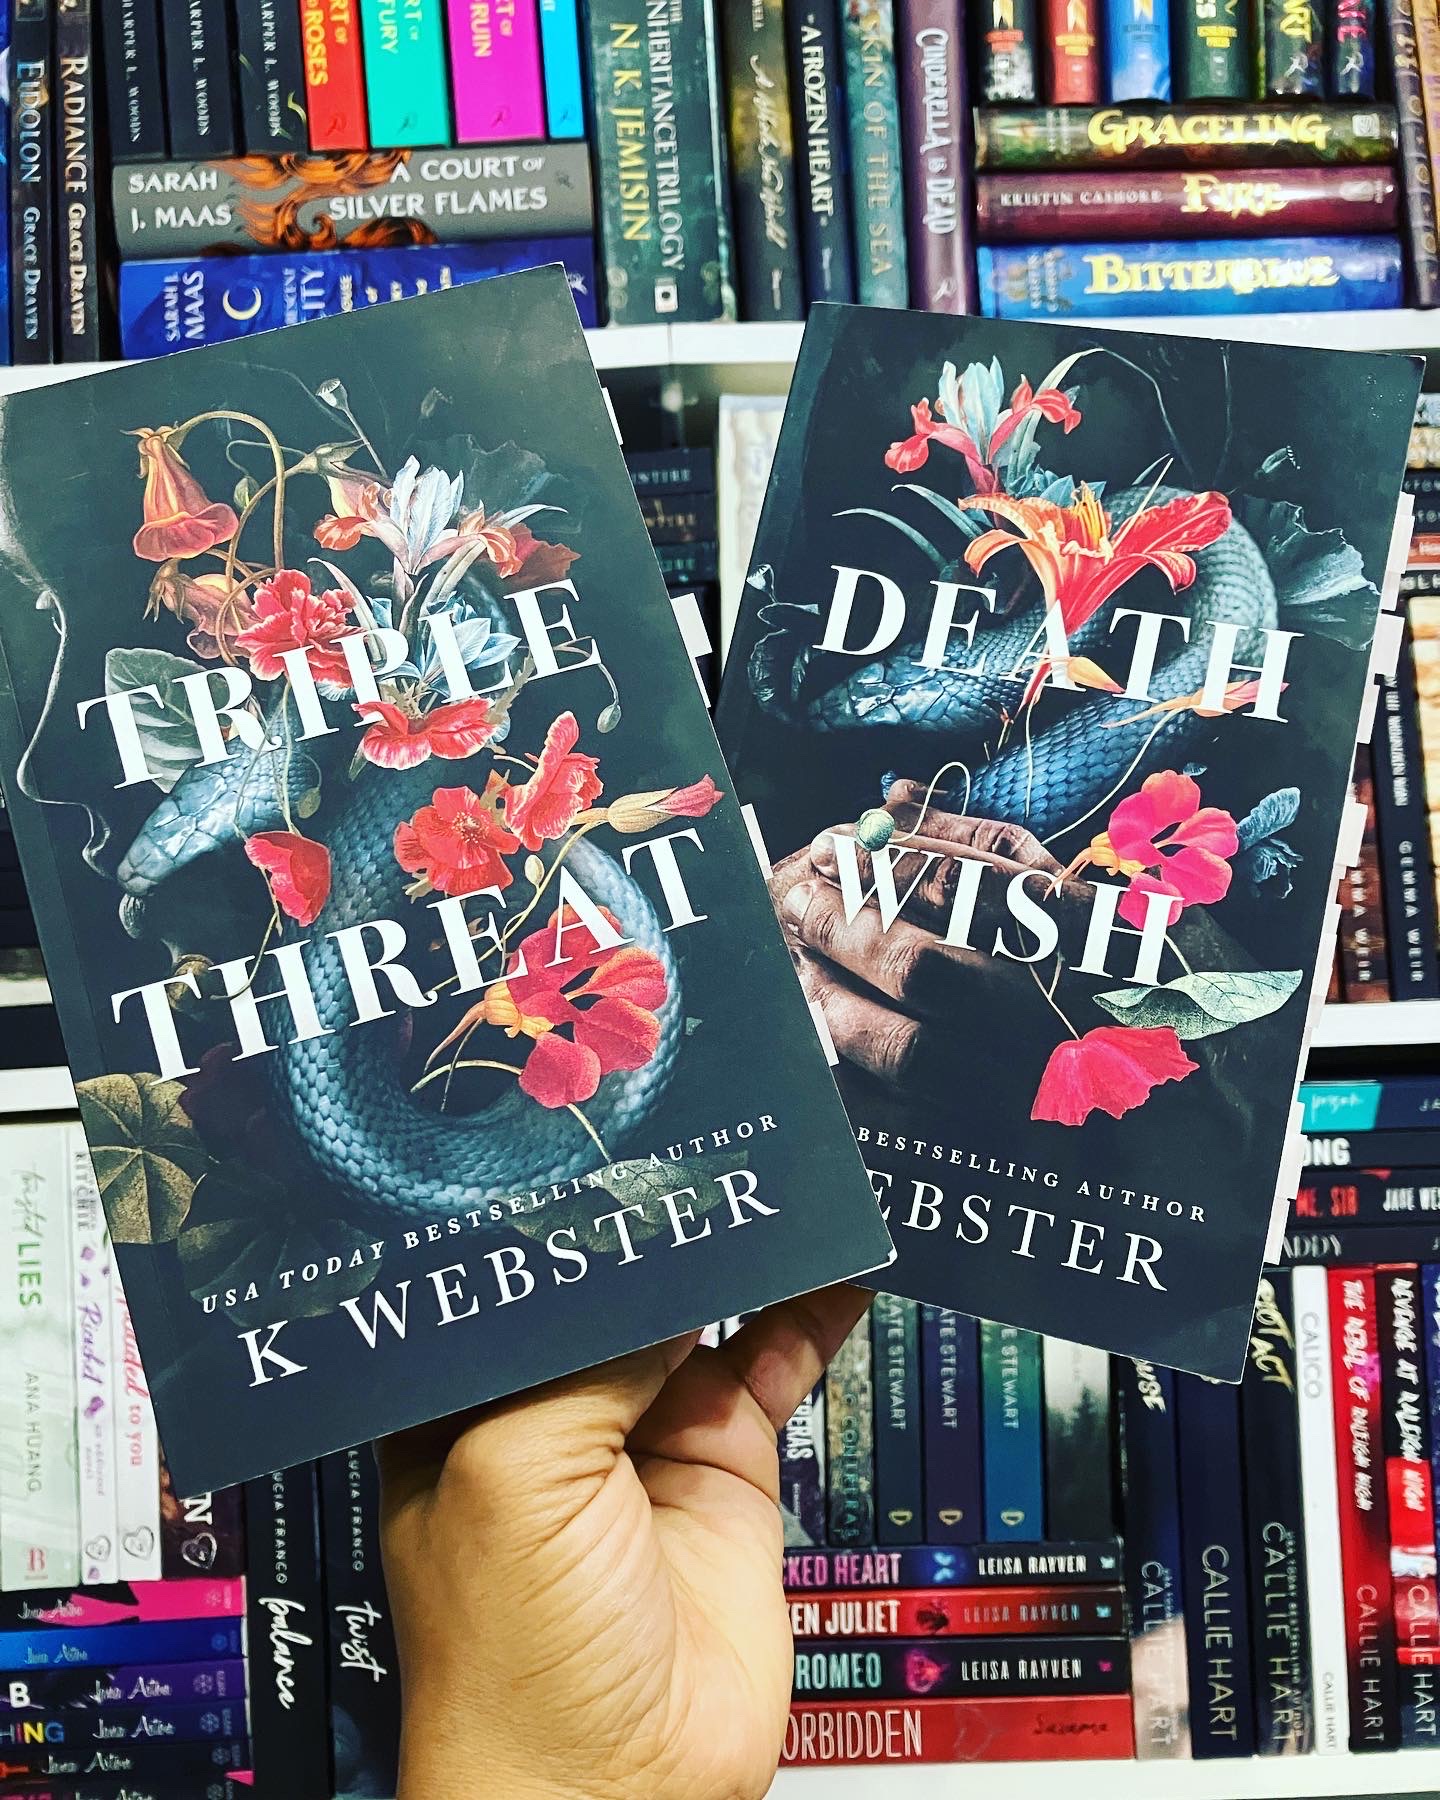 Triple Threat & Death Wish by K. Webster